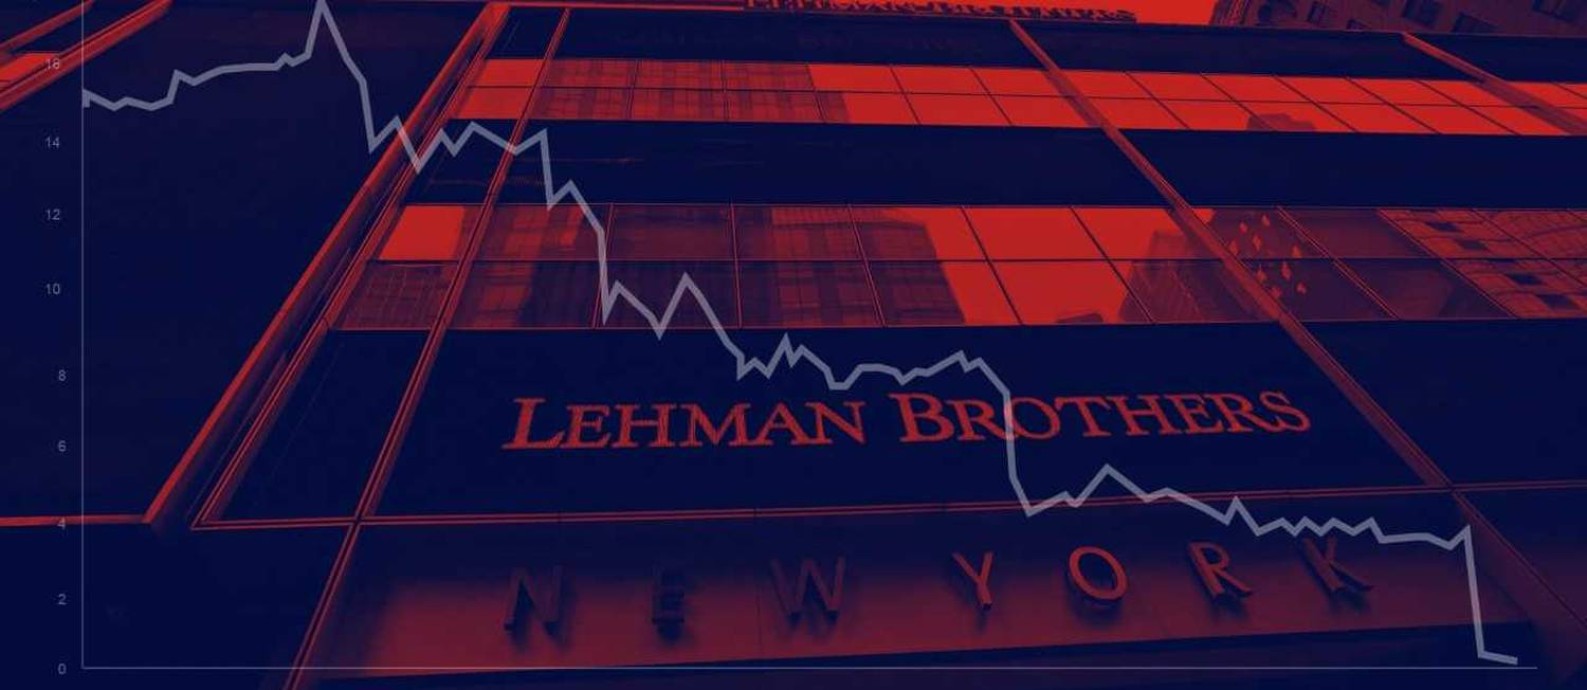 Quebra do Lehman Brothers deu início à crise de 2008 Foto: Ilustração O Globo